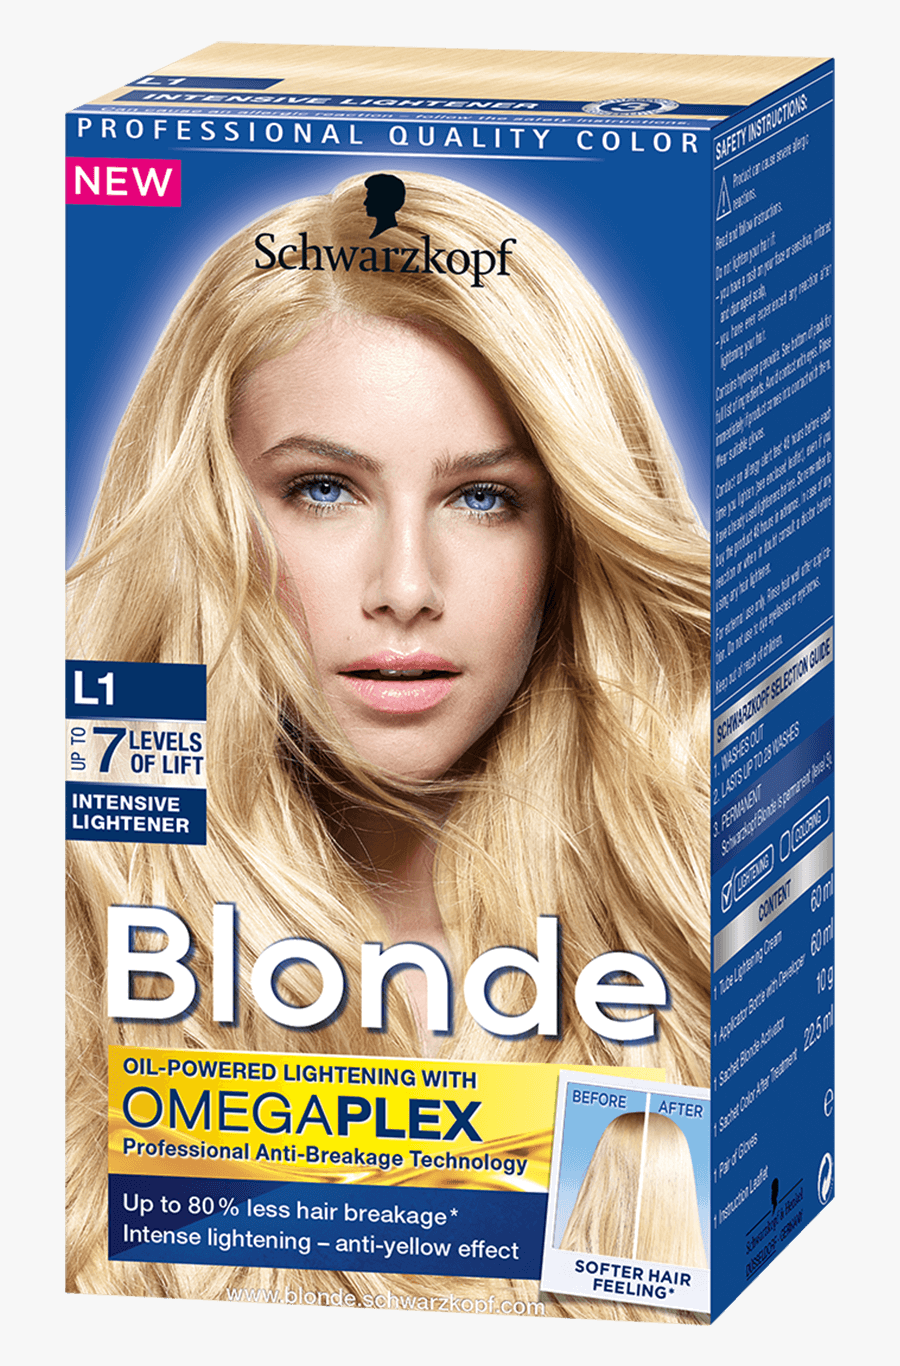 Blonde Lighteners L1 Intensive Lightener - Nordic Blonde Schwarzkopf, Transparent Clipart